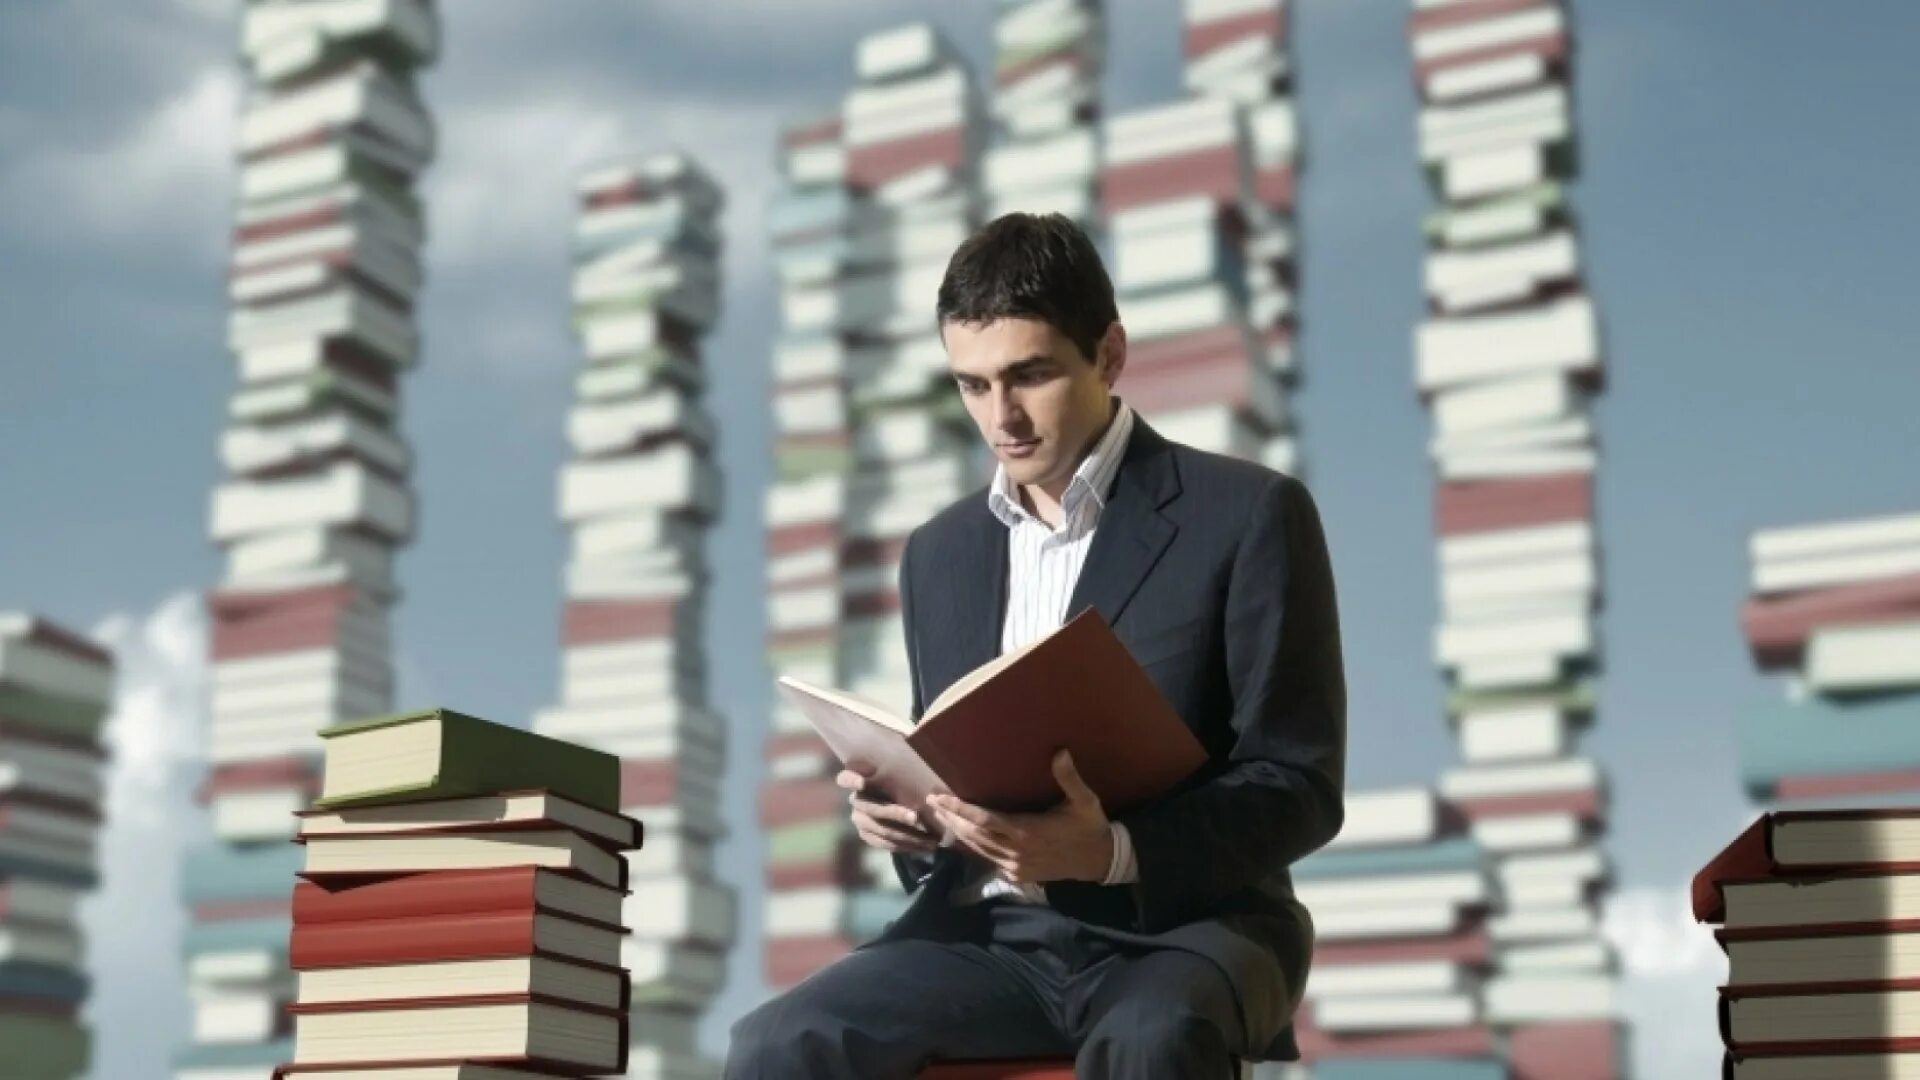 Книга человек. Человек с книжкой. Чтение людей. Человек читает. Книги читать архив